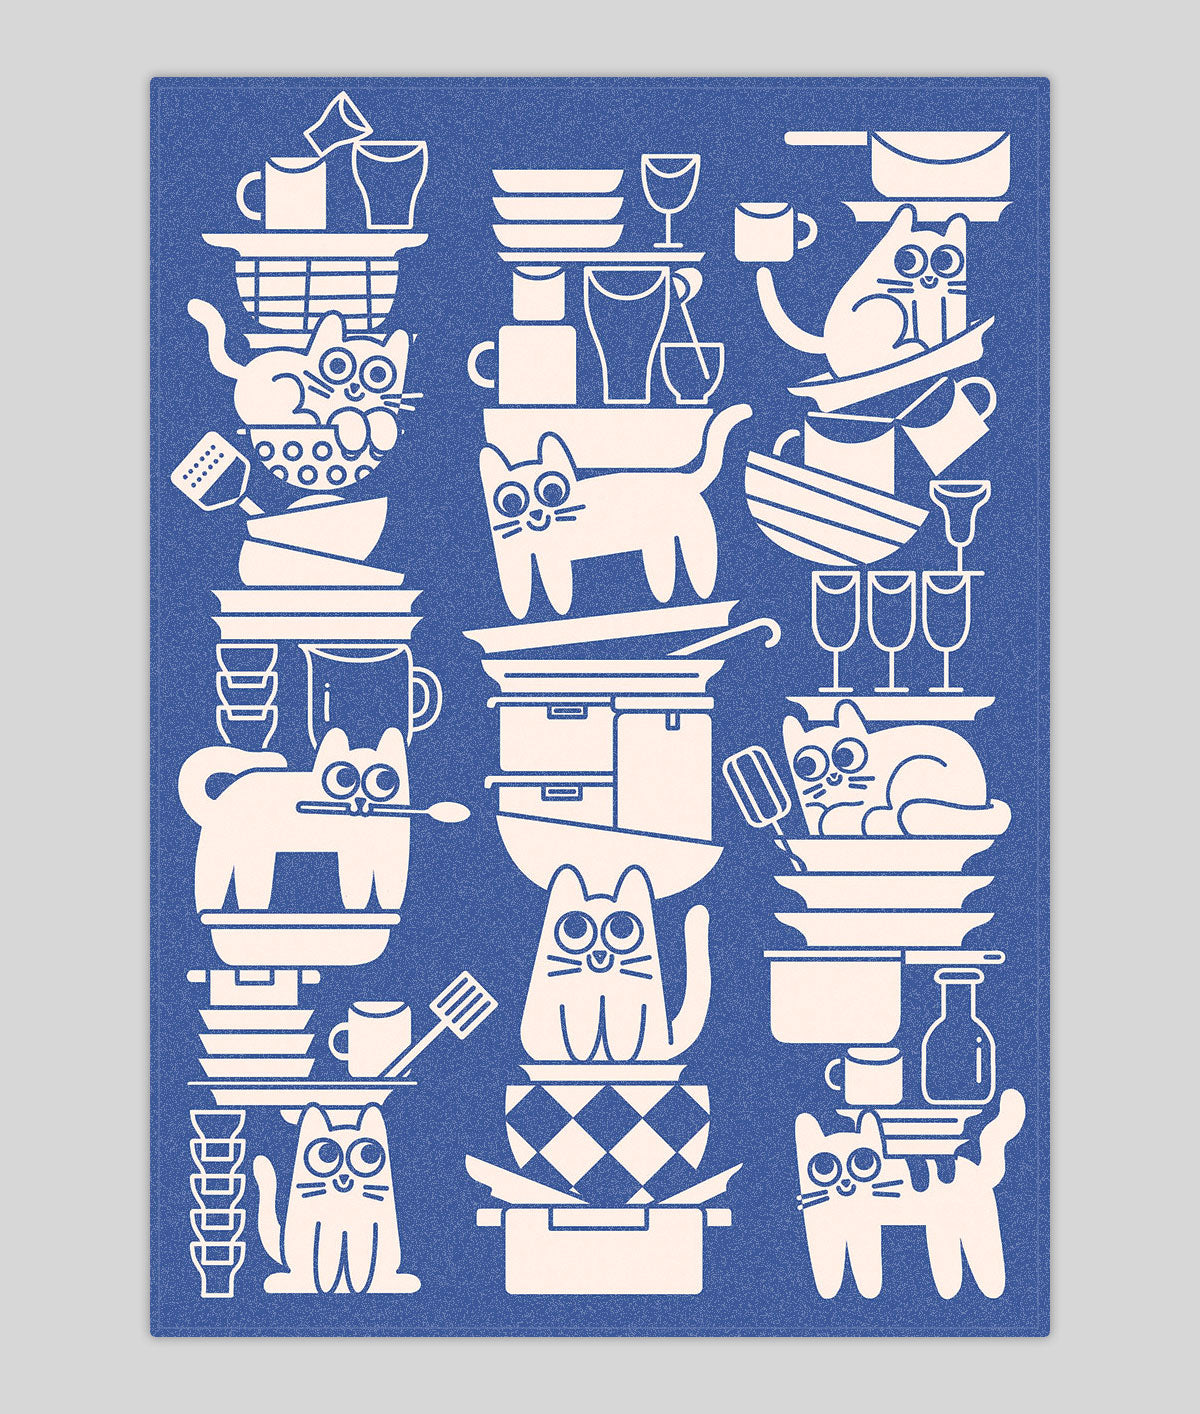 Kitchen Cats Tea Towel